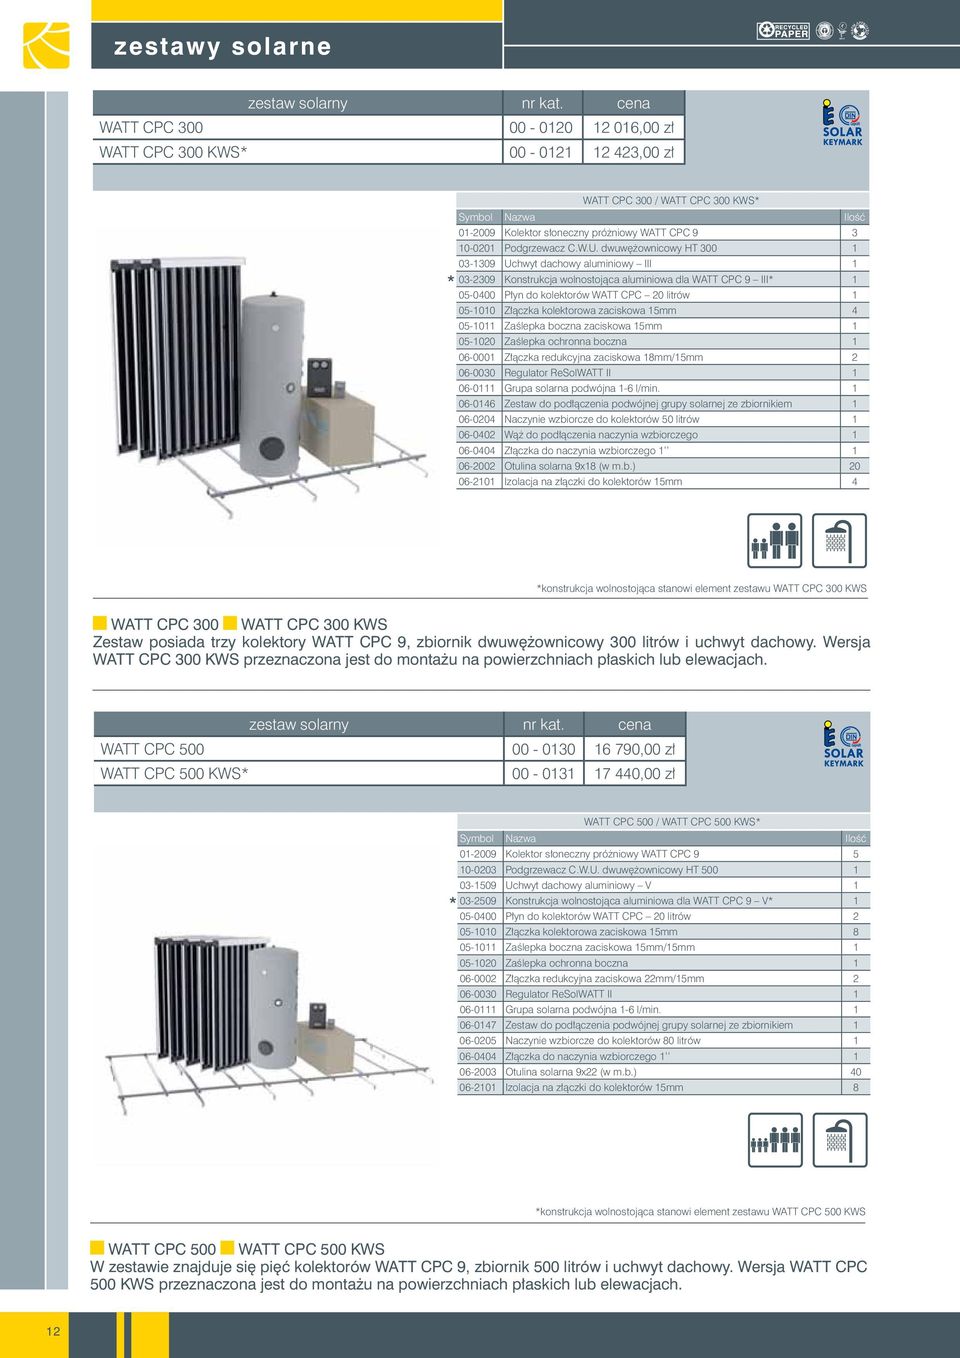 dwuwężownicowy HT 300 1 03-1309 Uchwyt dachowy aluminiowy III 1 03-2309 Konstrukcja wolnostojąca aluminiowa dla WATT CPC 9 III* 1 05-0400 Płyn do kolektorów WATT CPC 20 litrów 1 05-1010 Złączka